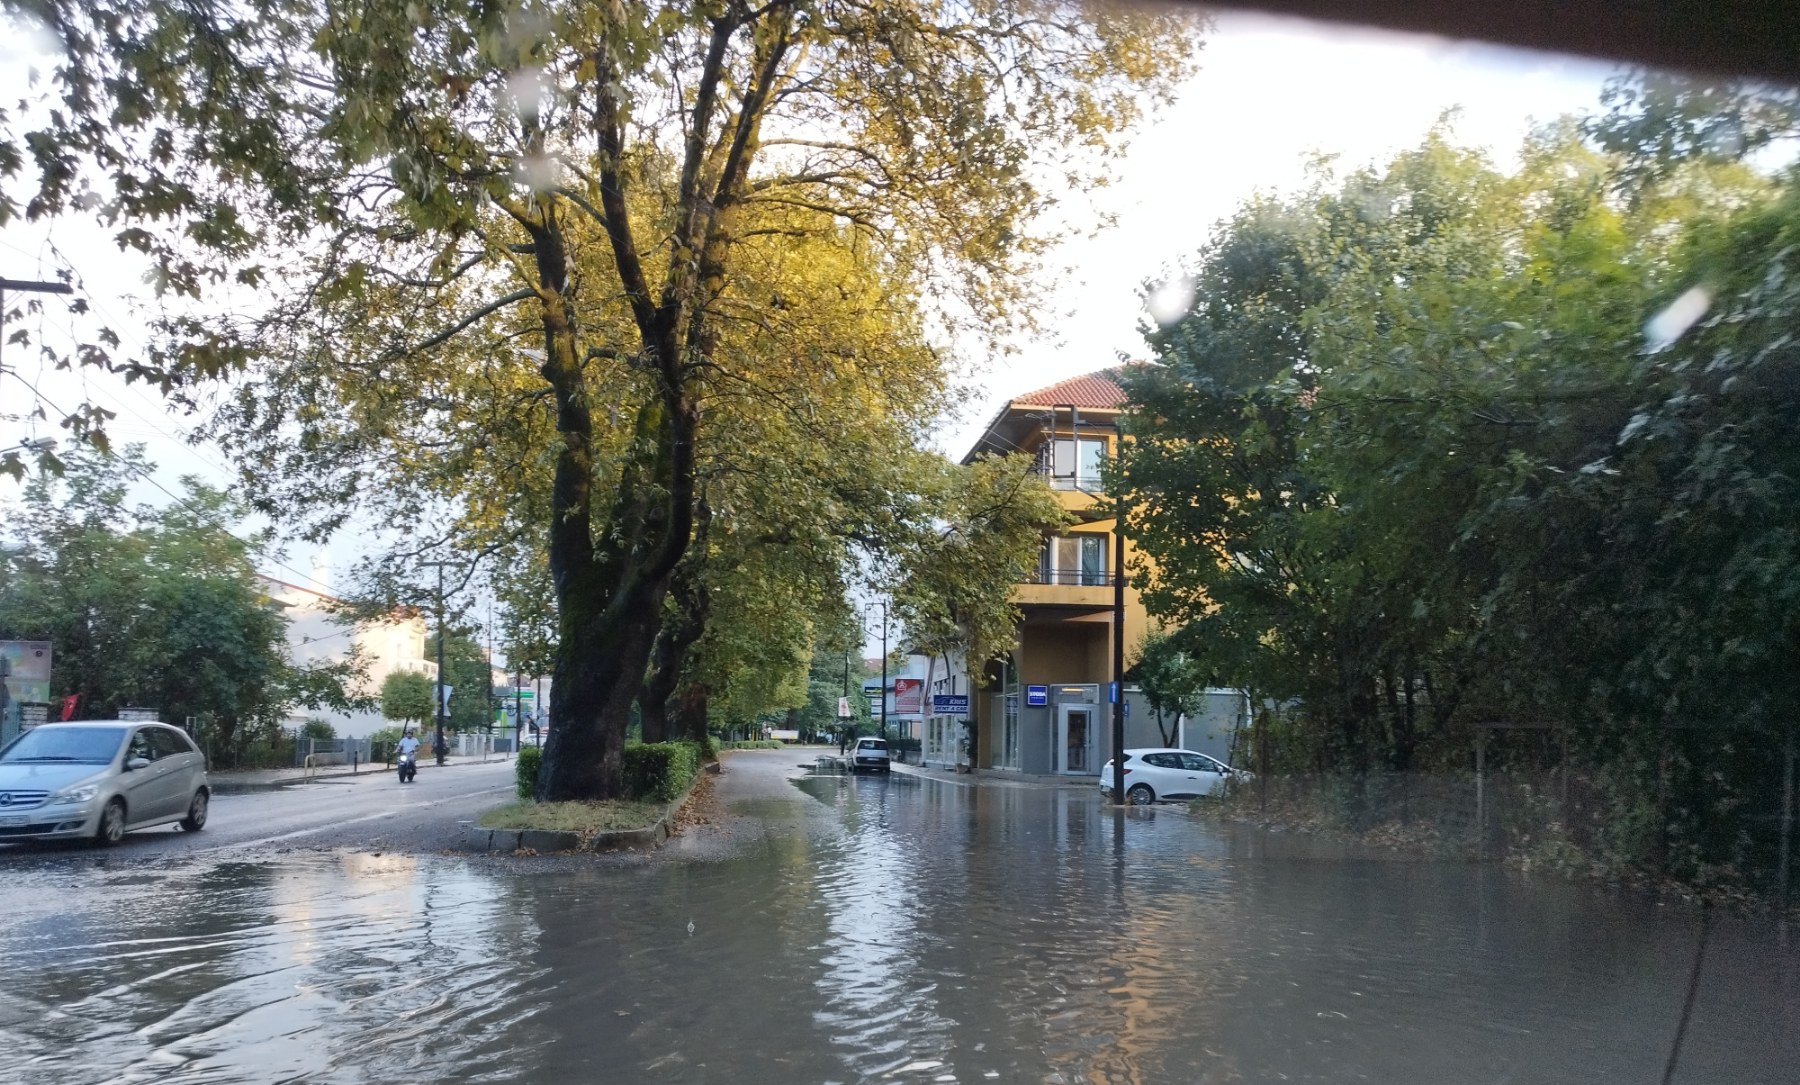 Ιωάννινα: Ξαφνικό μπουρίνι προκάλεσε προβλήματα - Οι δρόμοι μετατράπηκαν σε ποτάμια